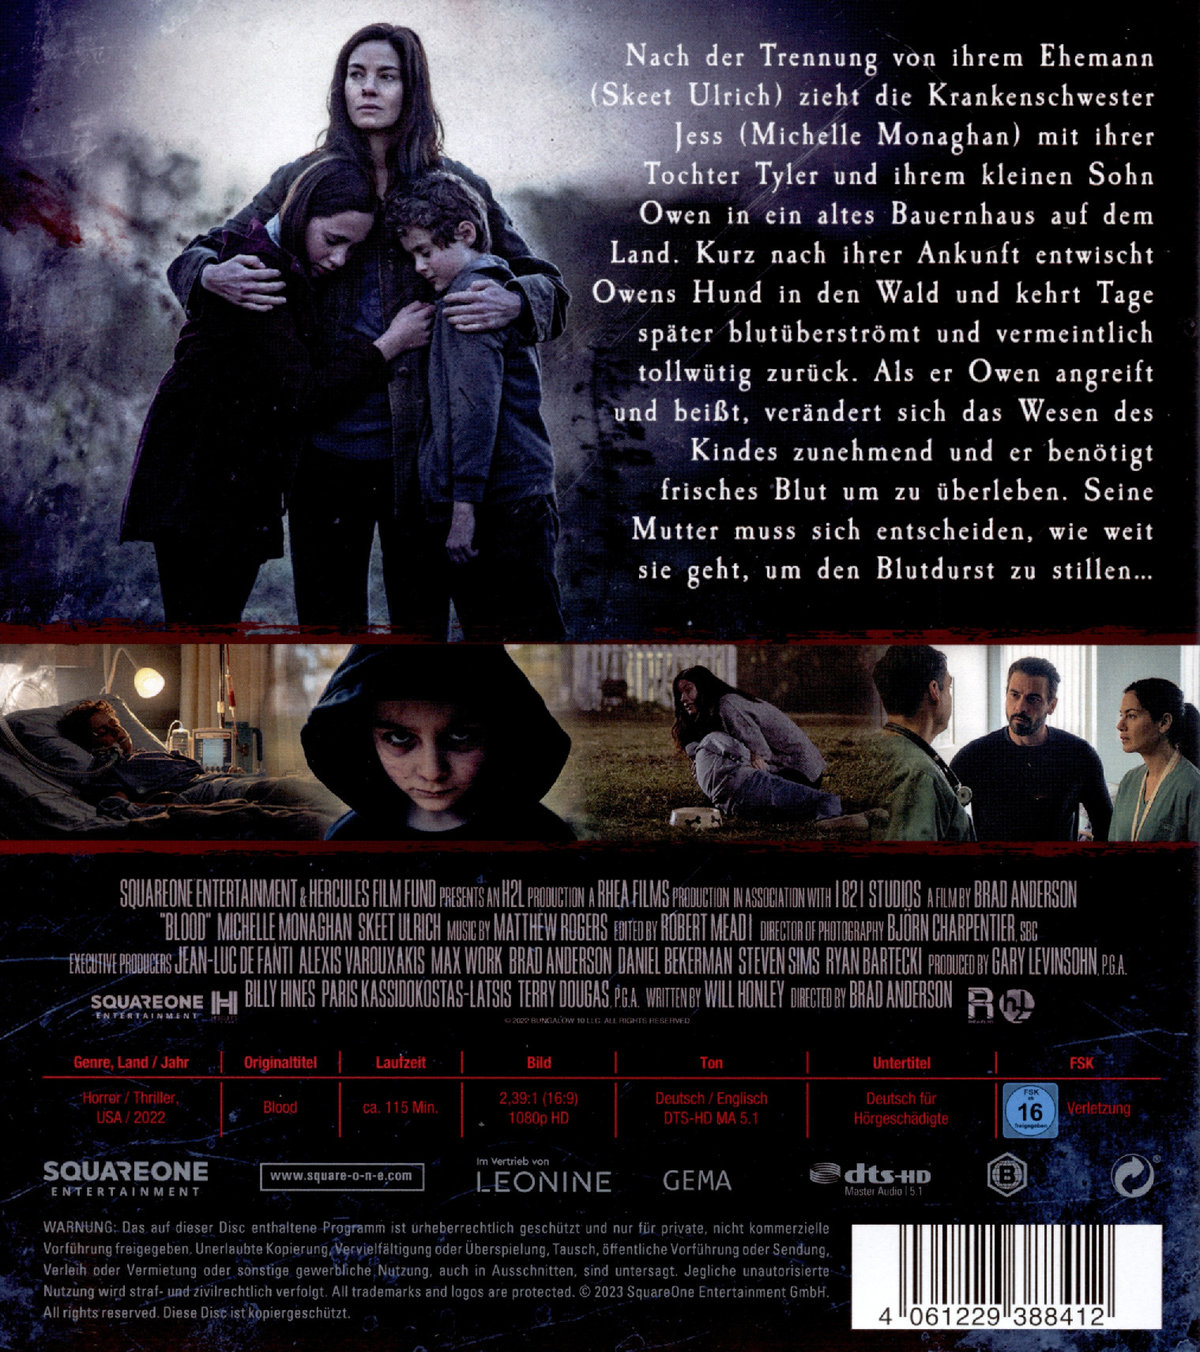 Blood  (Blu-ray Disc)